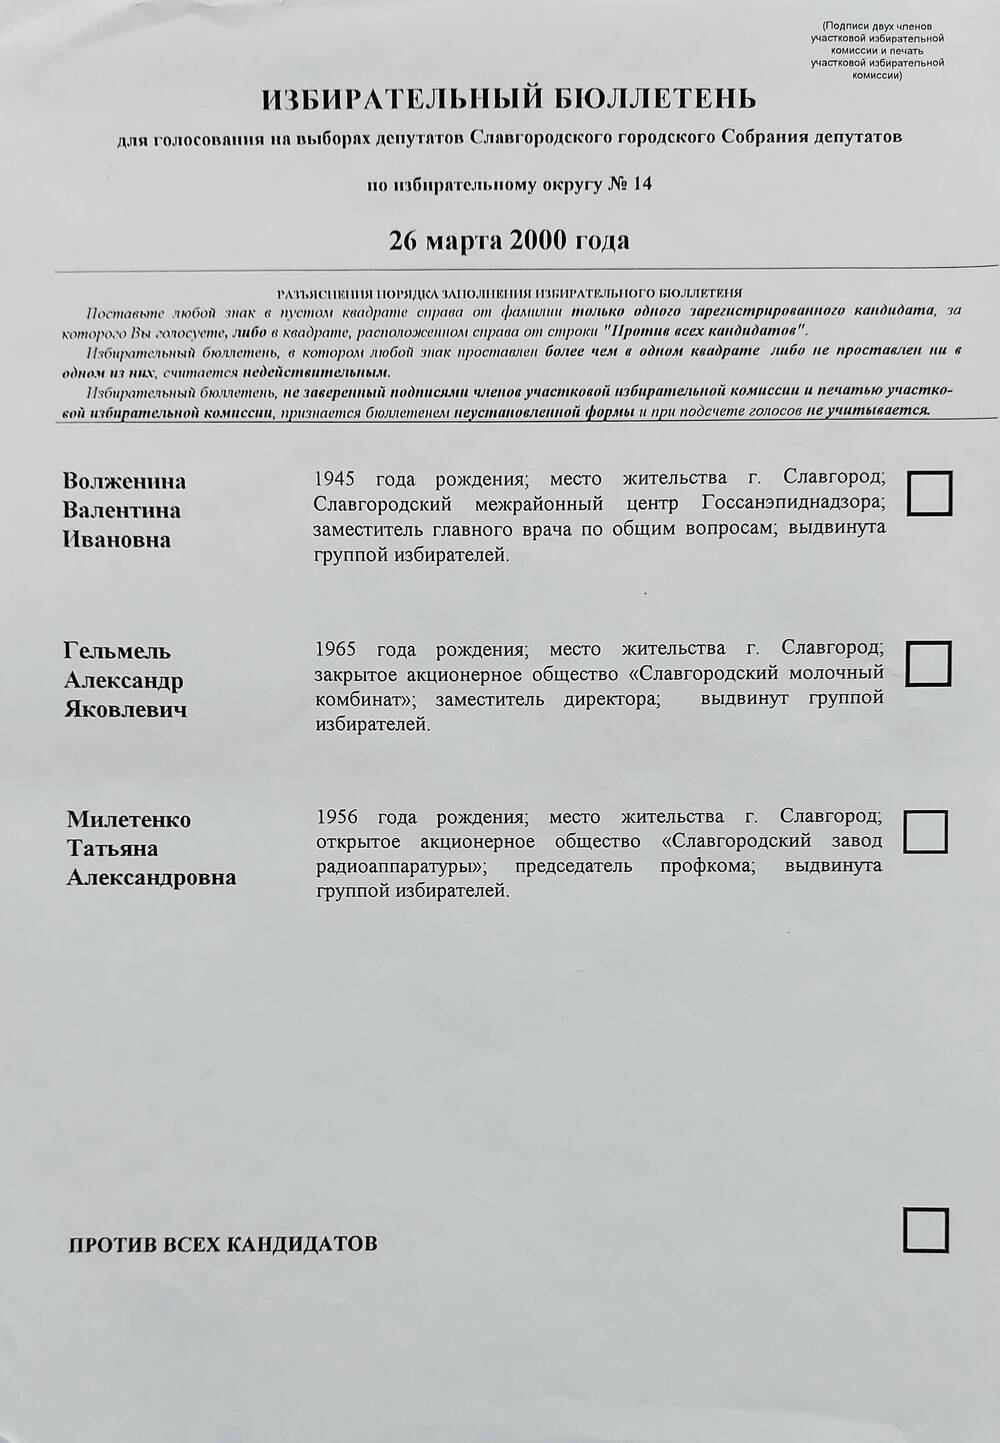 Бюллетень избирательный для голосования на выборах депутатов Славгородского городского Собрания депутатов по избирательному округу № 14 от 26 марта 2000 года.